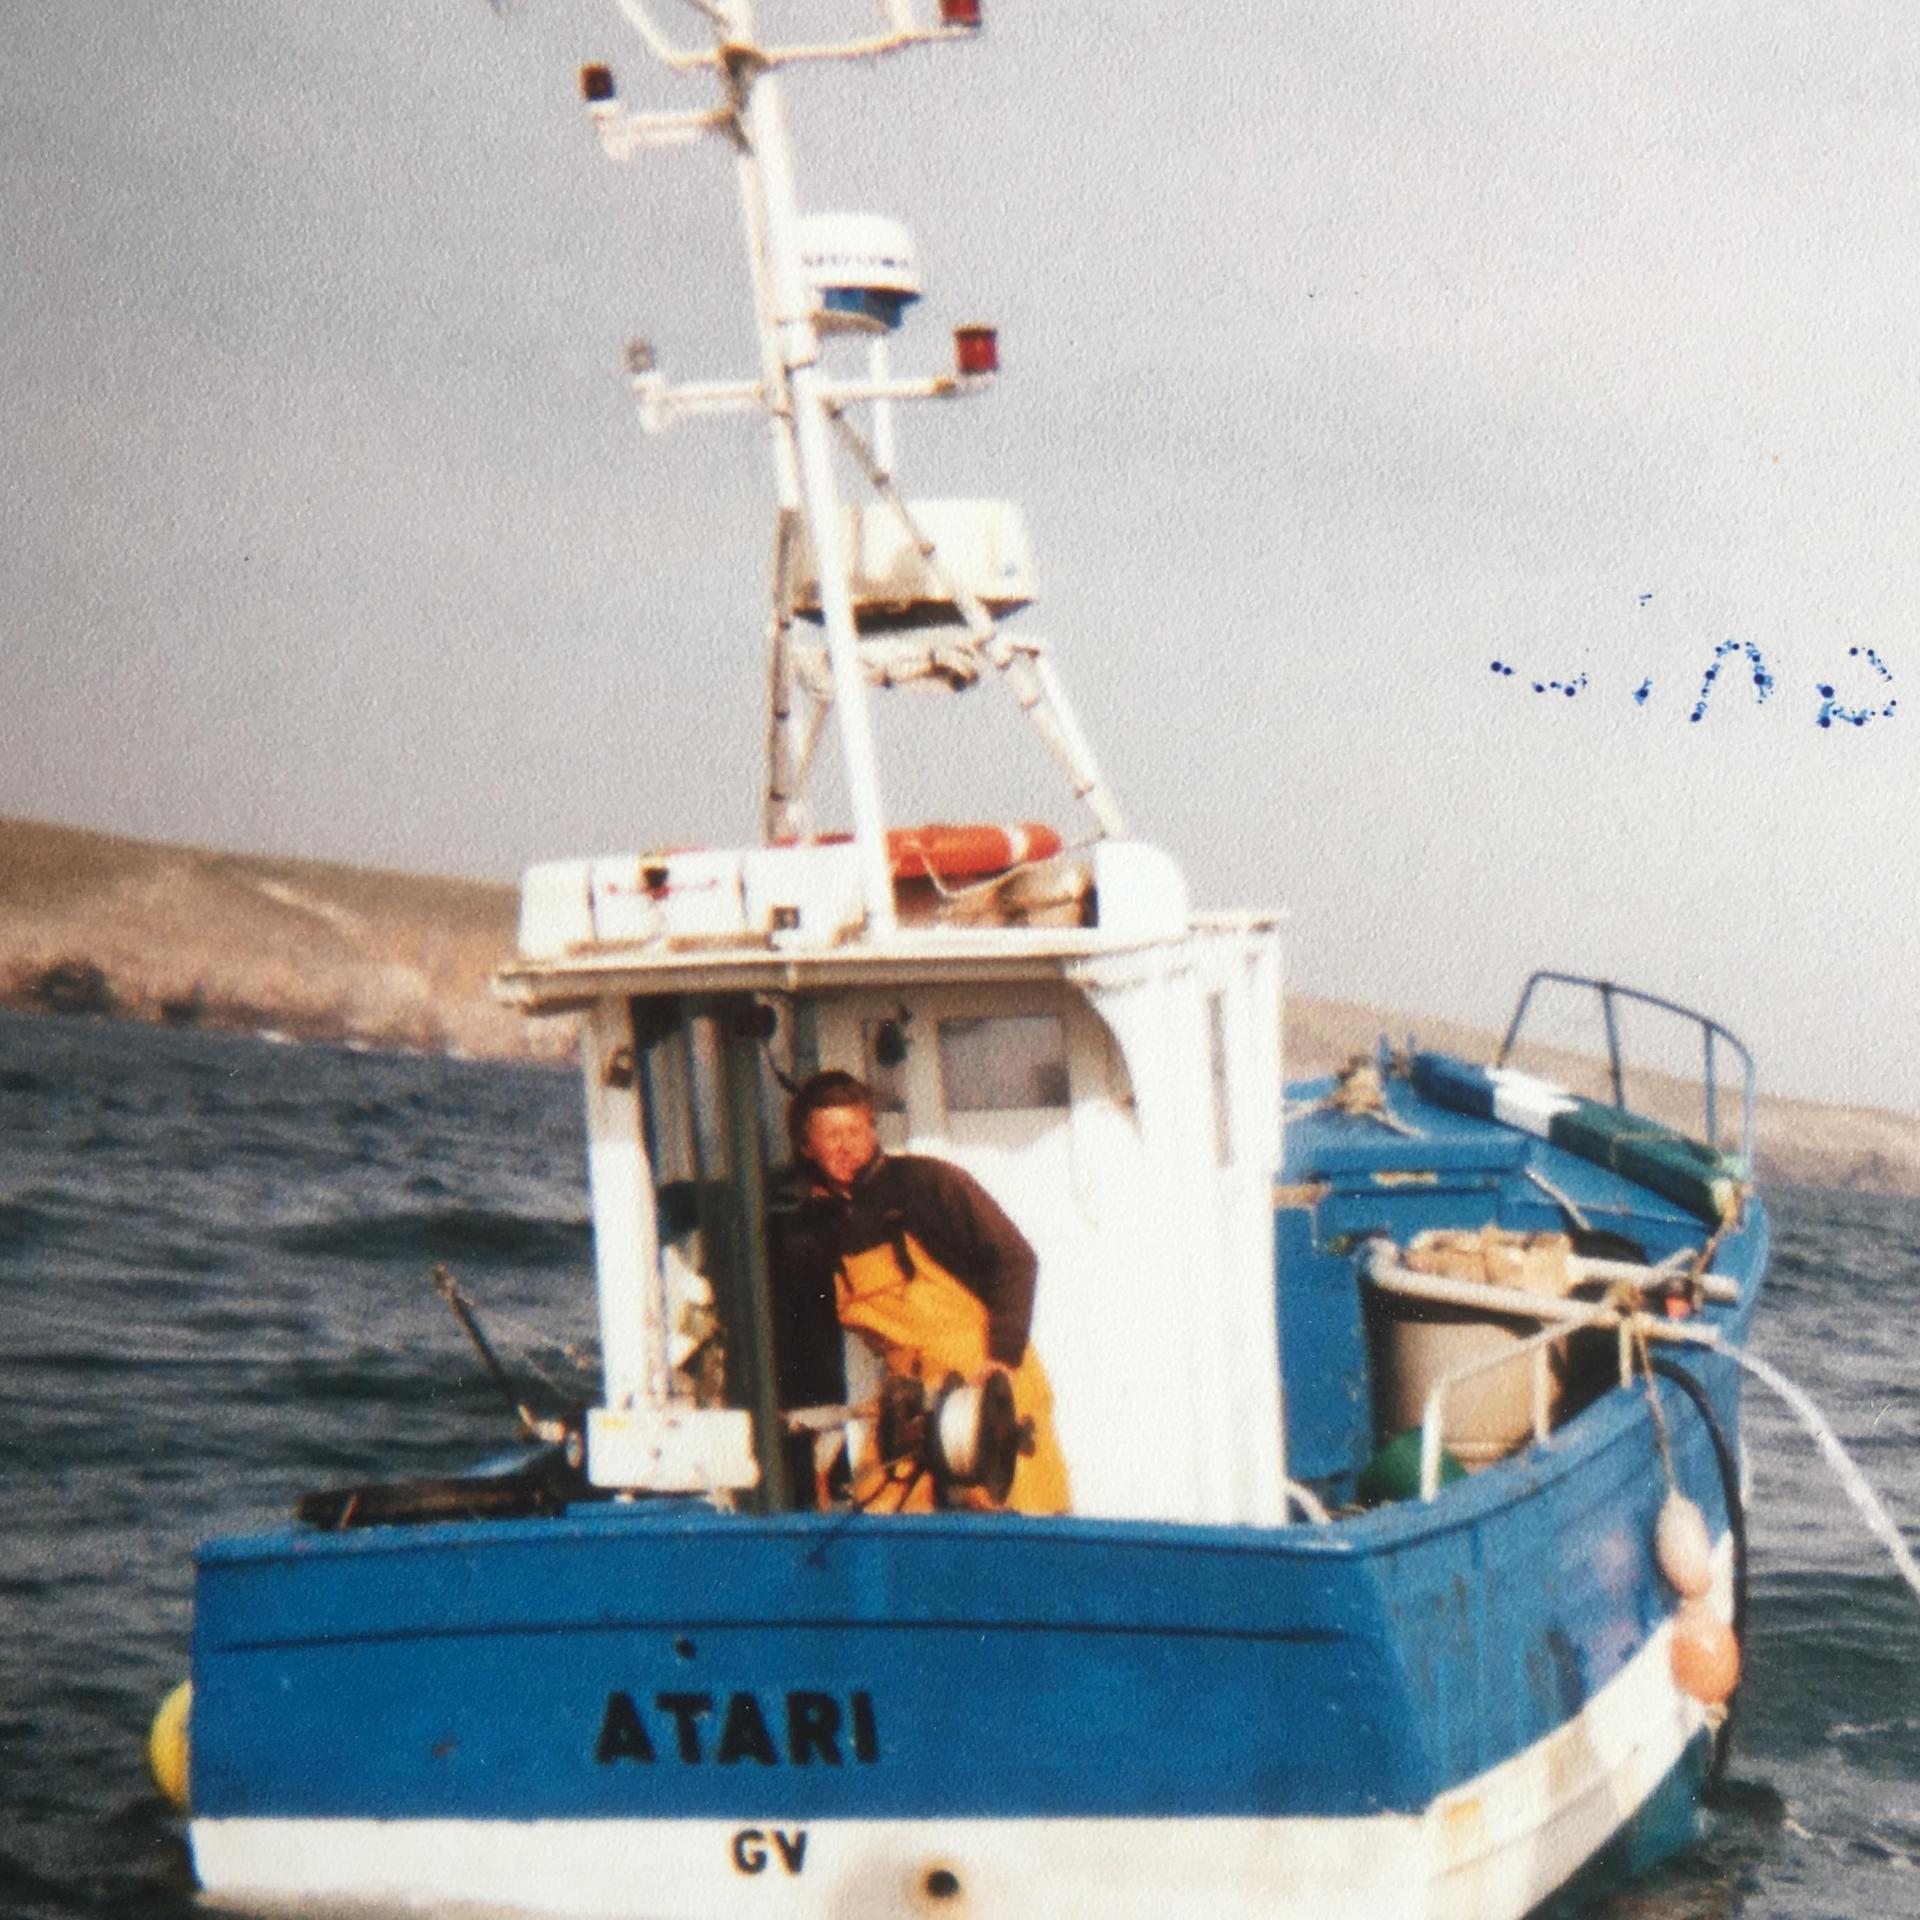 Atari gv185317 en mer yves mathieu helias